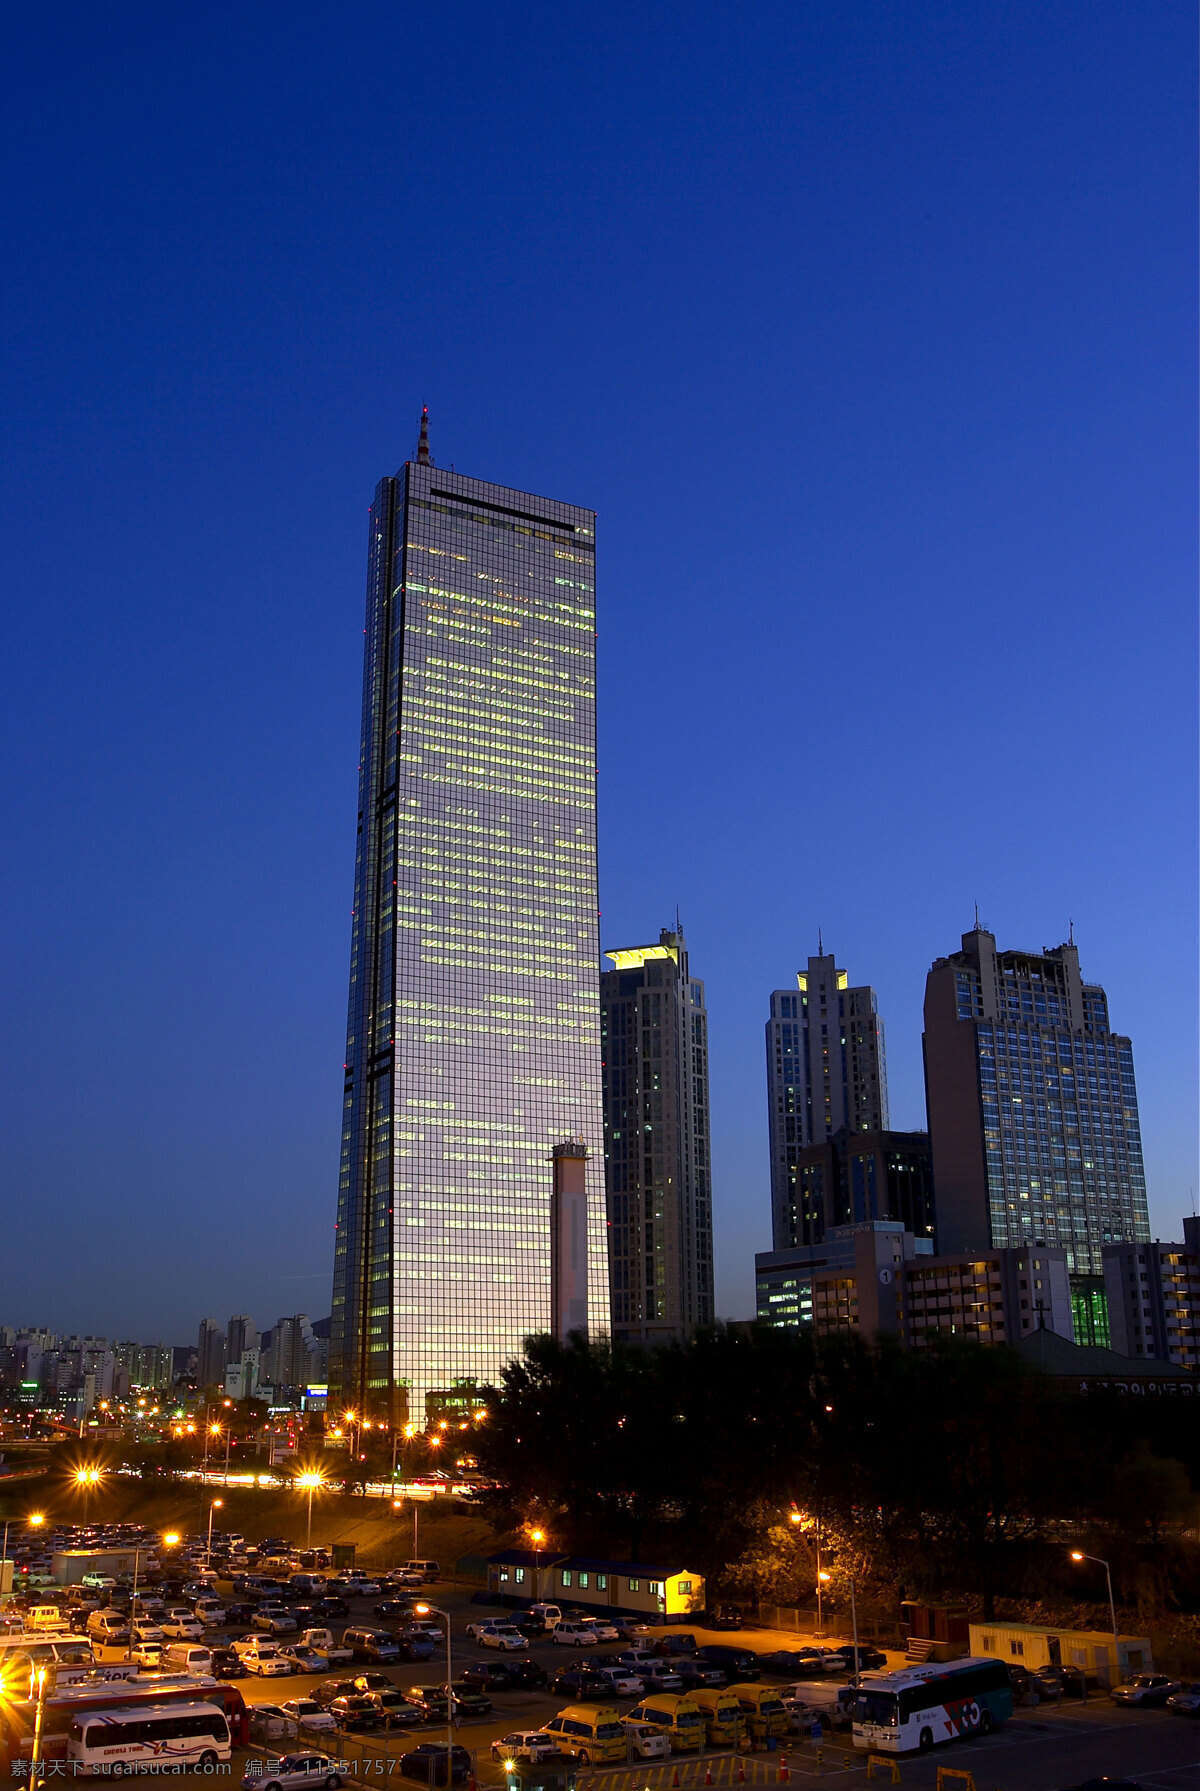 首尔夜景图片 城市建筑 首尔夜景 韩国 首尔 韩城 高楼 大厦 塔 首尔塔 旅游摄影 国外旅游 摄影图库